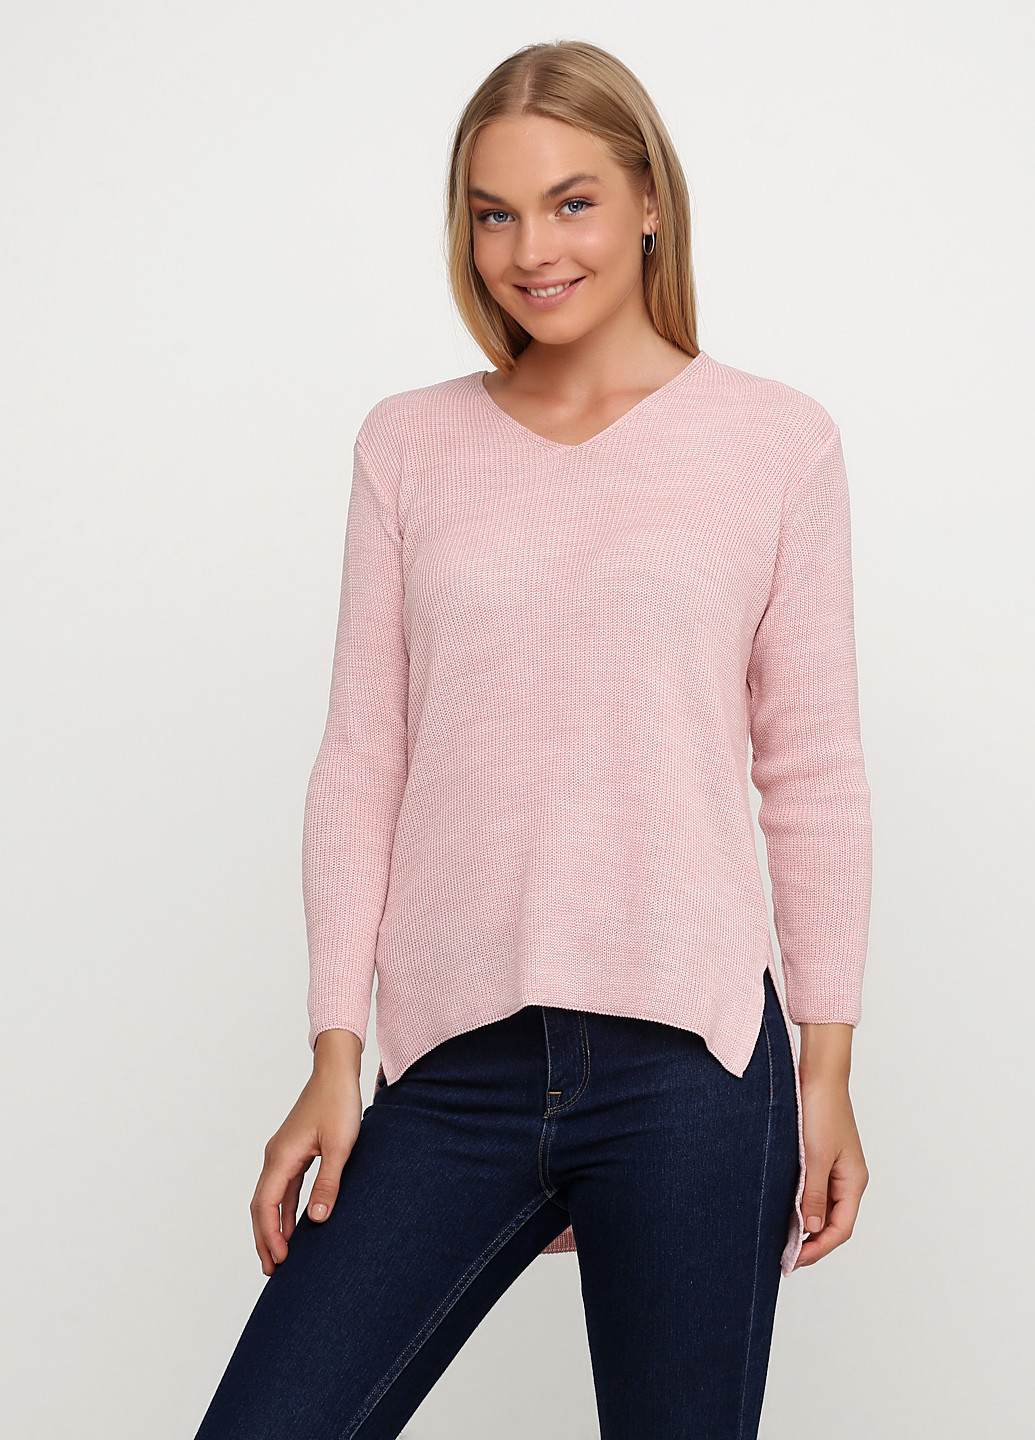 Світло-рожевий демісезонний пуловер пуловер Askar Triko